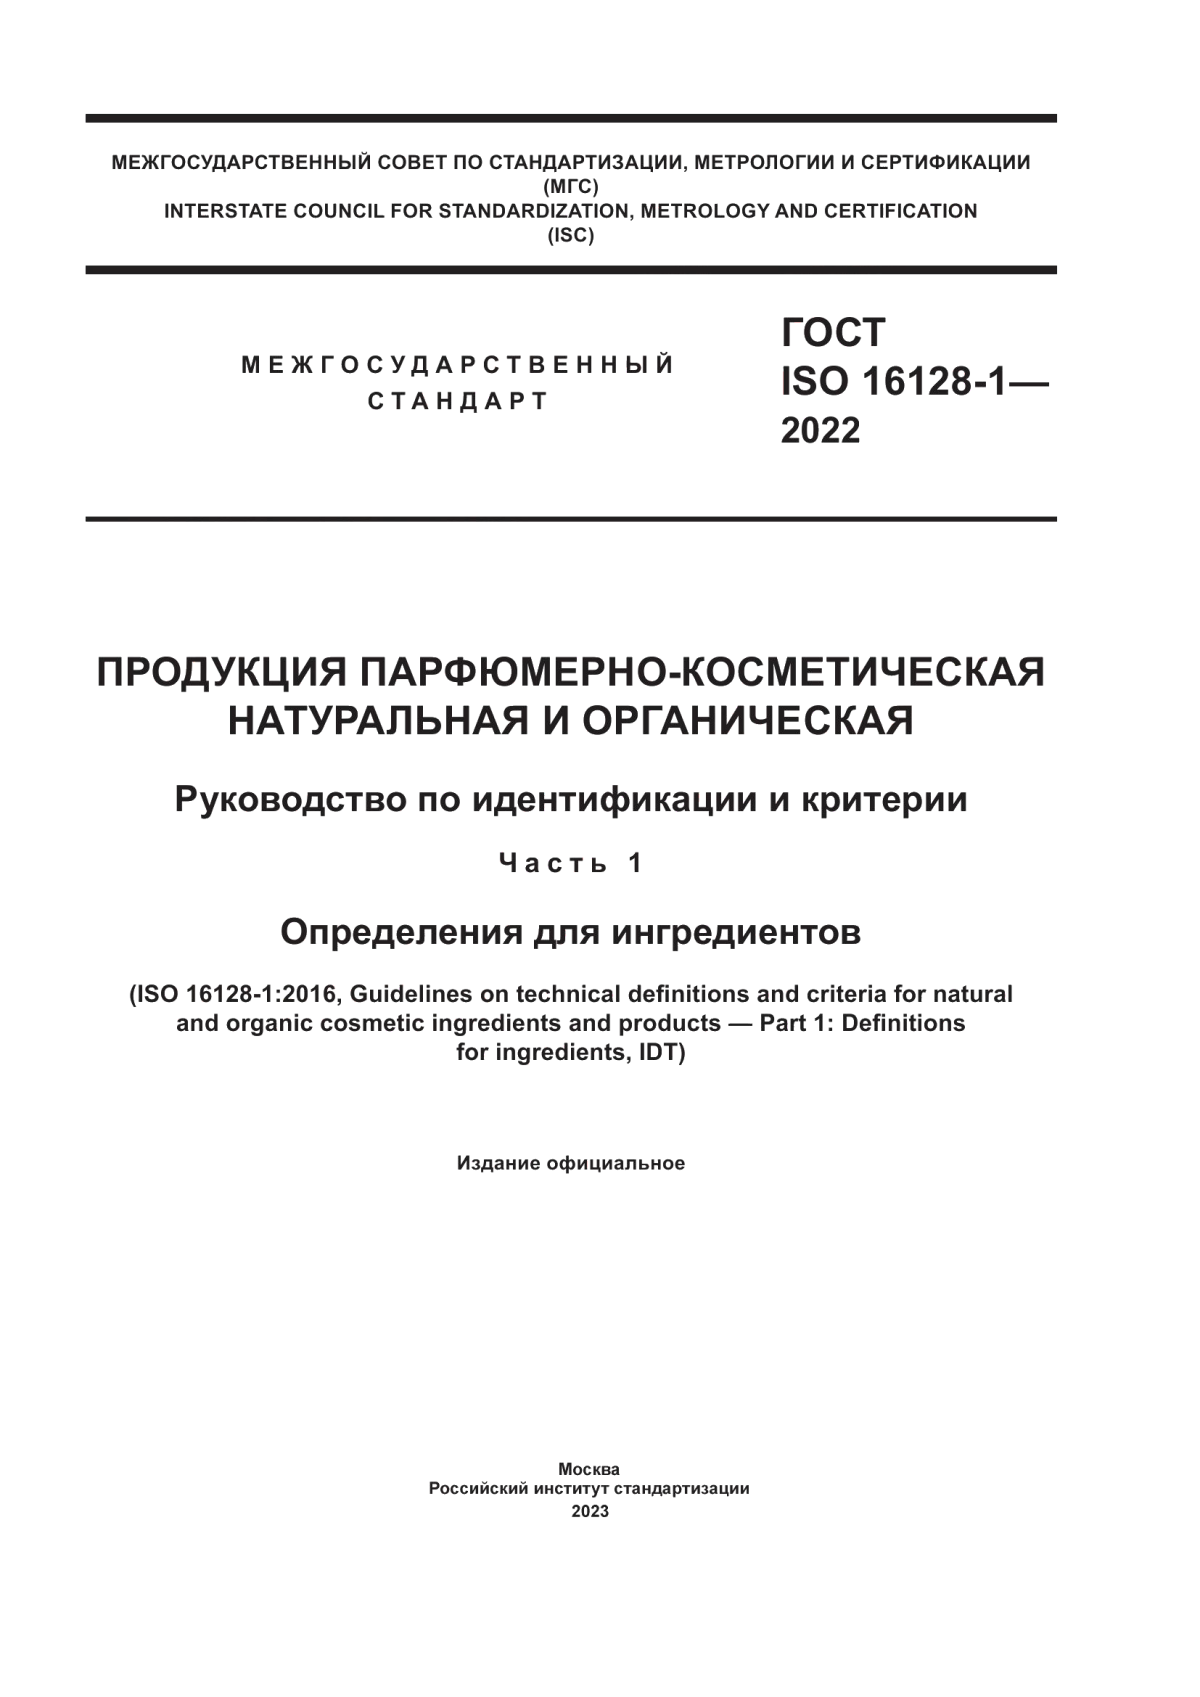 ГОСТ ISO 16128-1-2022 Продукция парфюмерно-косметическая натуральная и органическая. Руководство по идентификации и критерии. Часть 1. Определения для ингредиентов